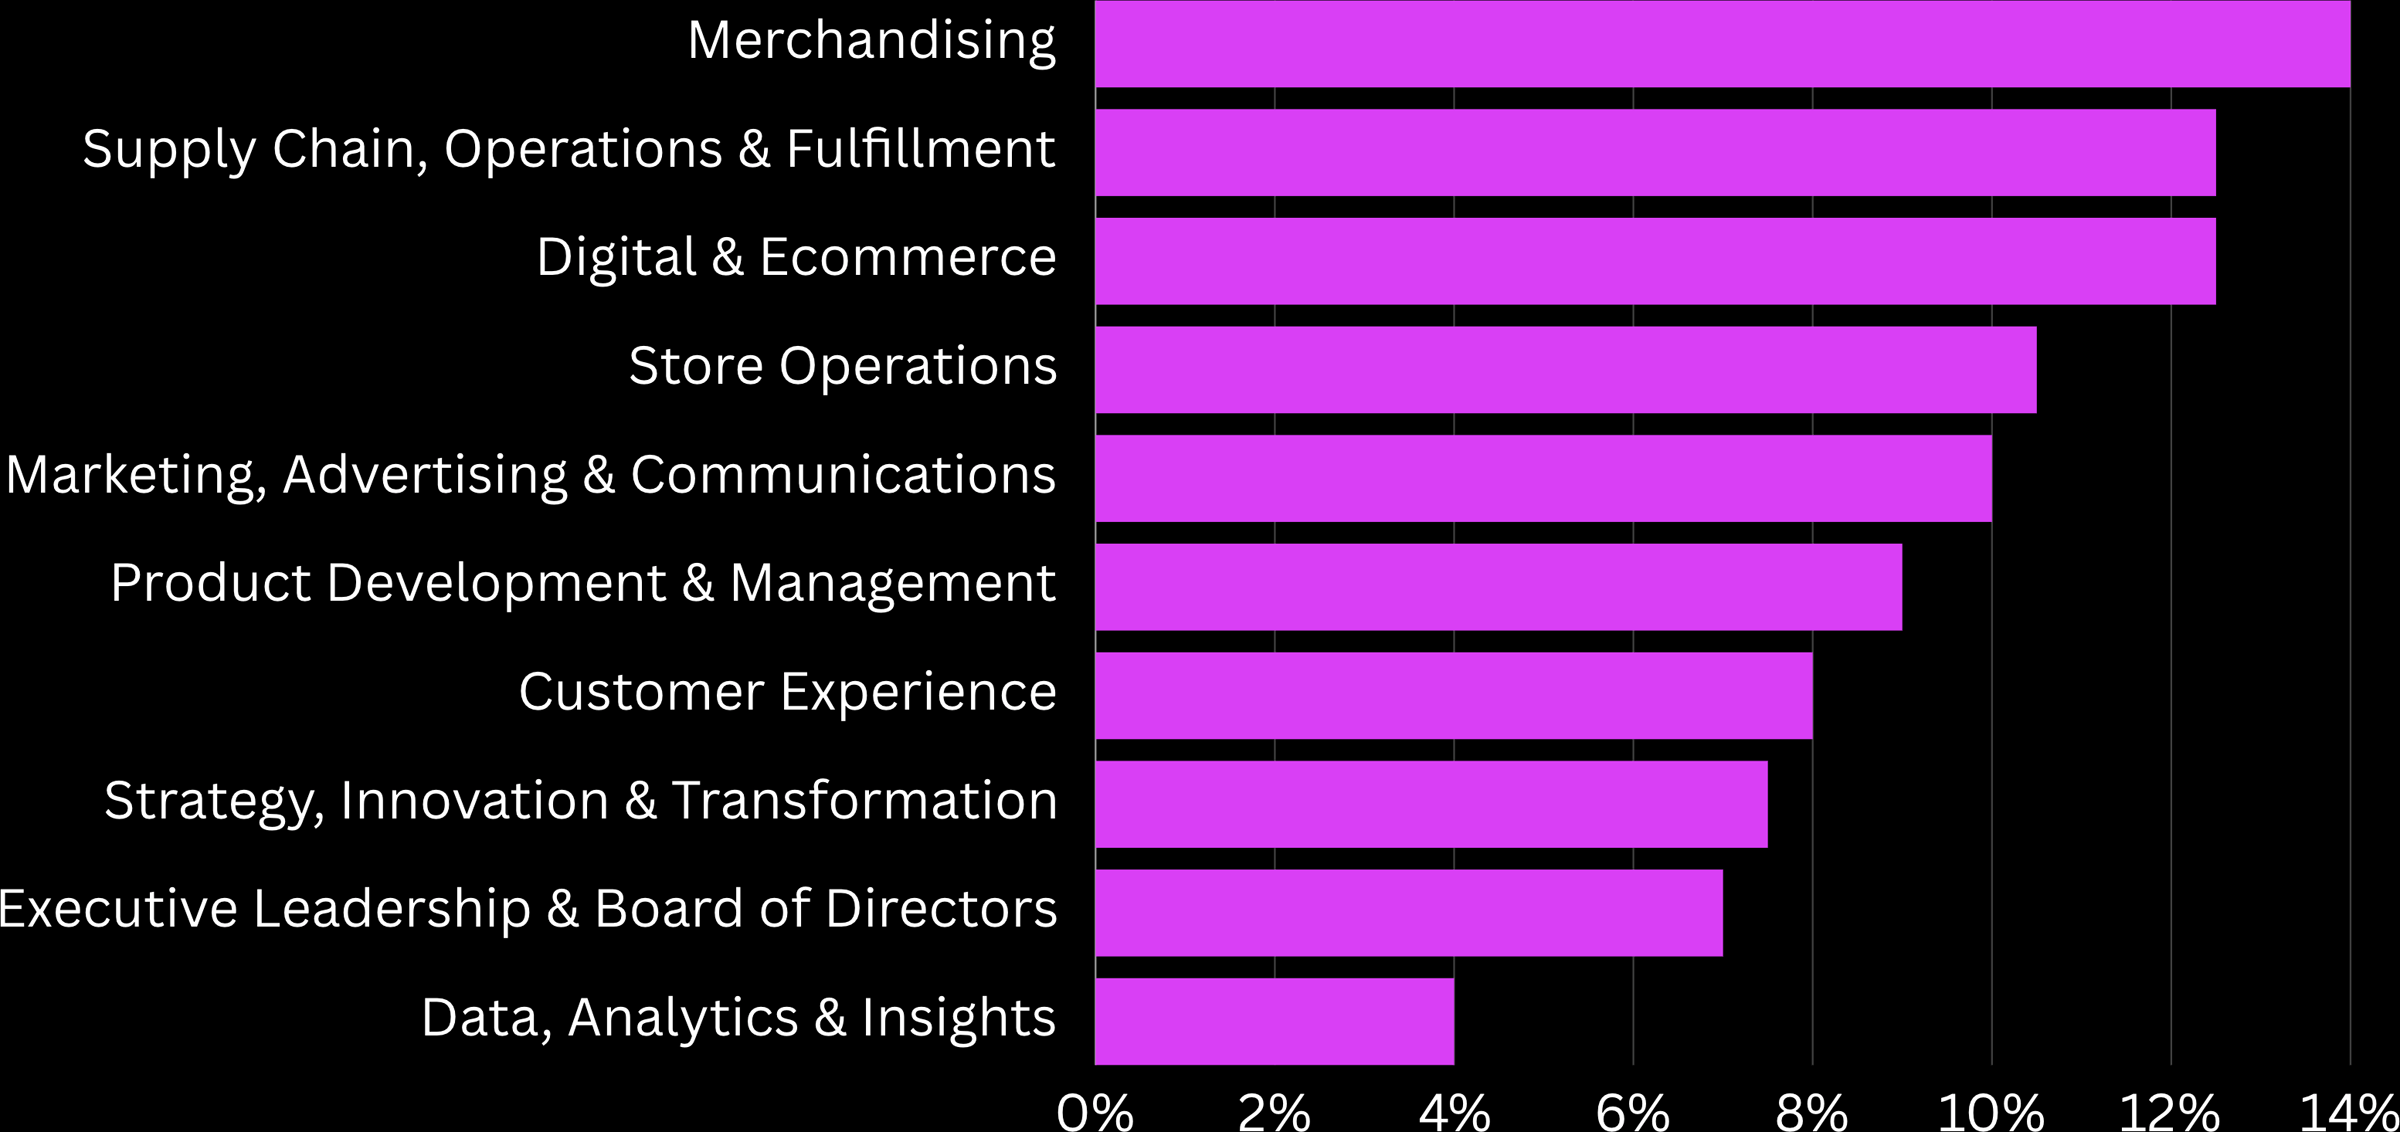 Top 10 Retailer & Brand job functions